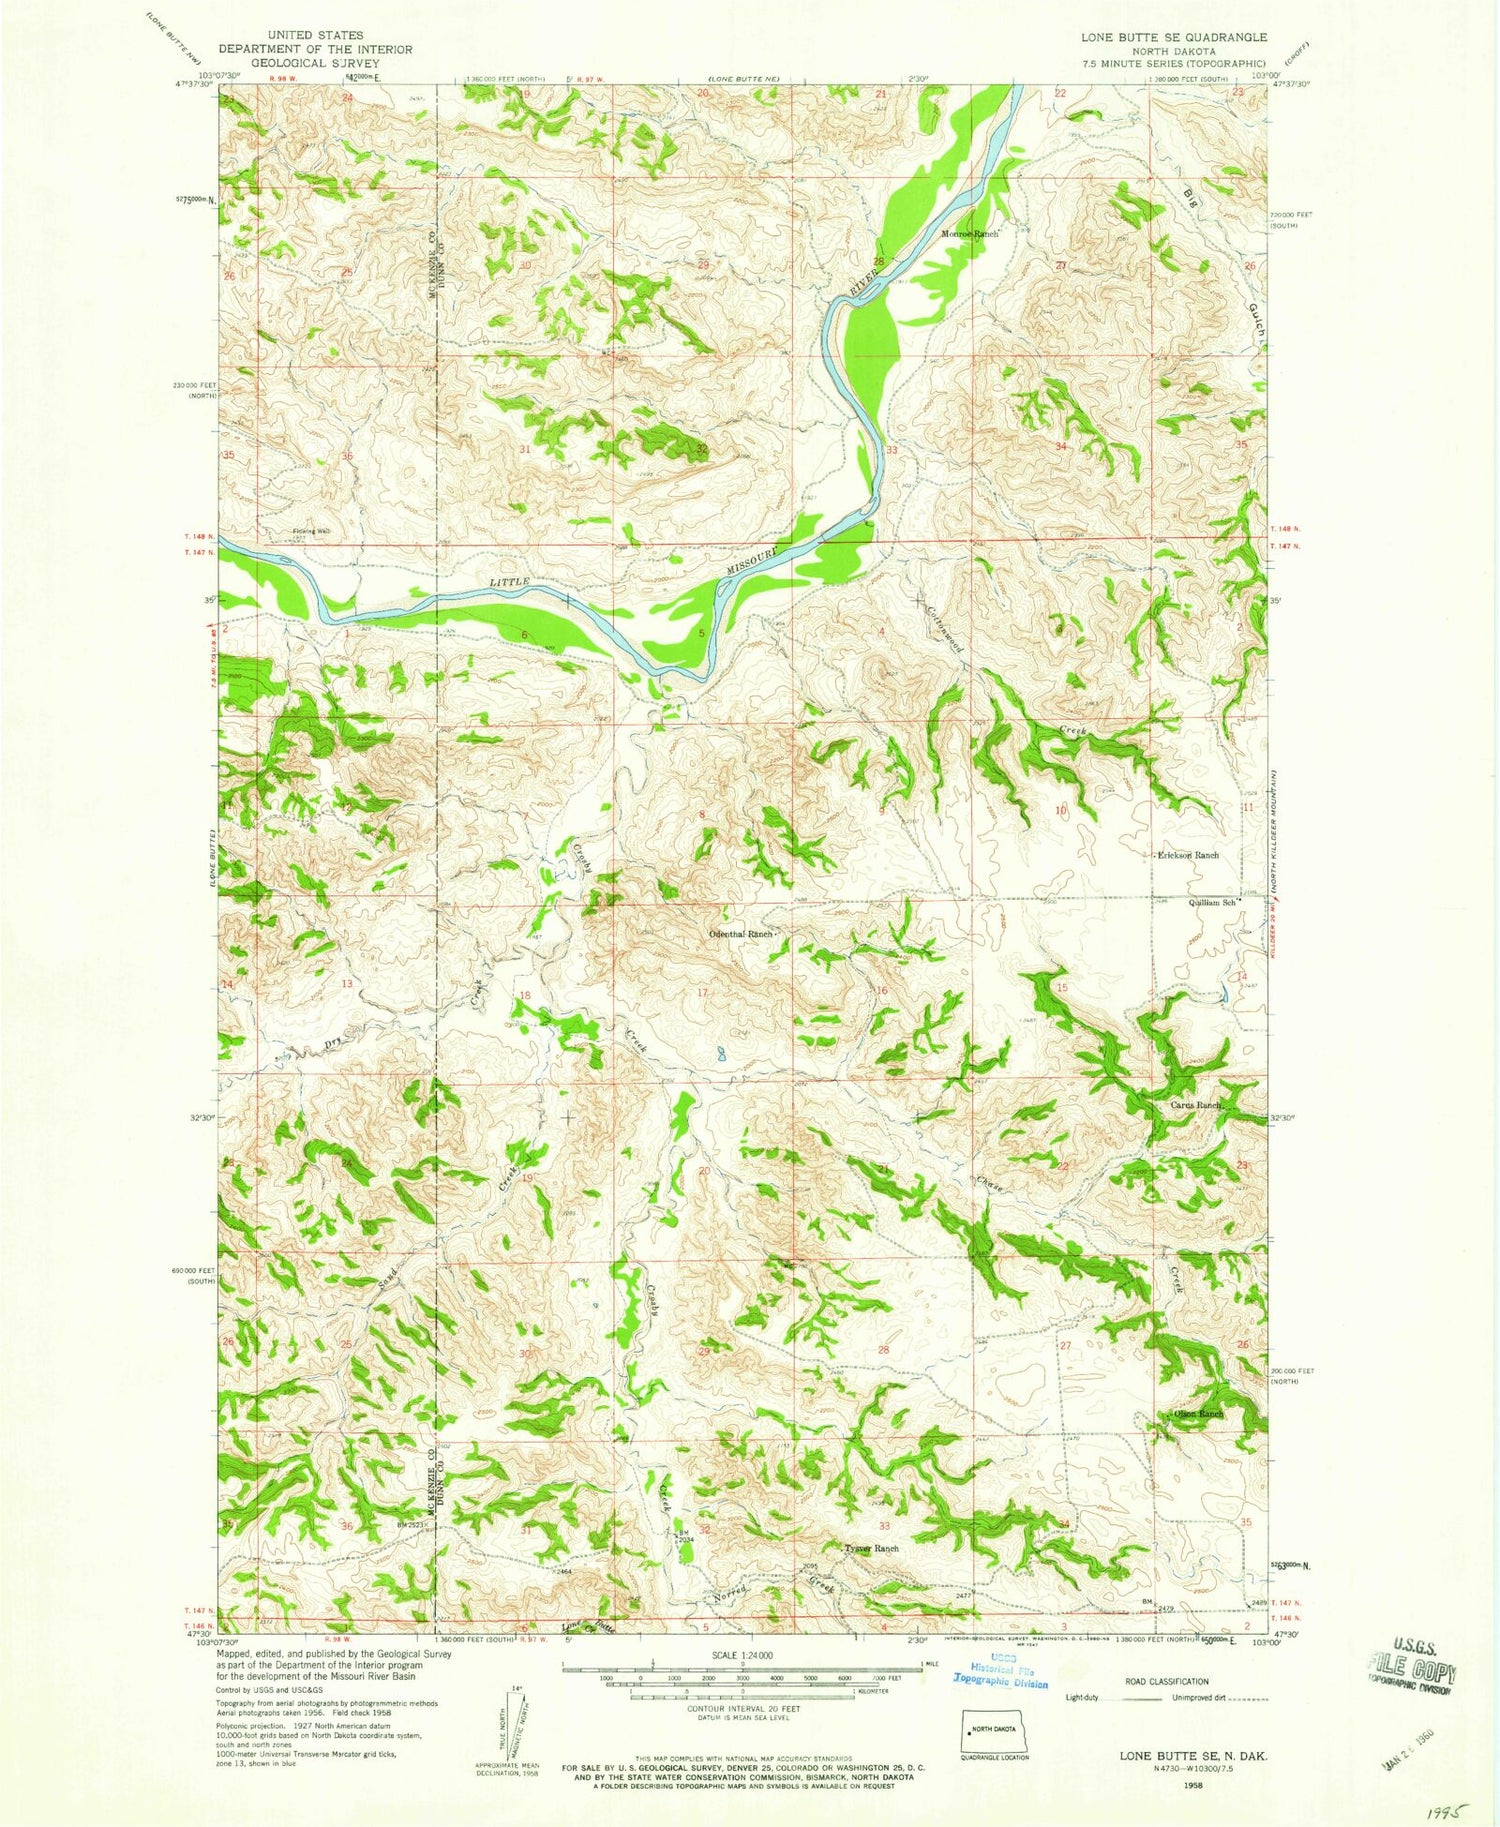 Classic USGS Lone Butte SE North Dakota 7.5'x7.5' Topo Map Image